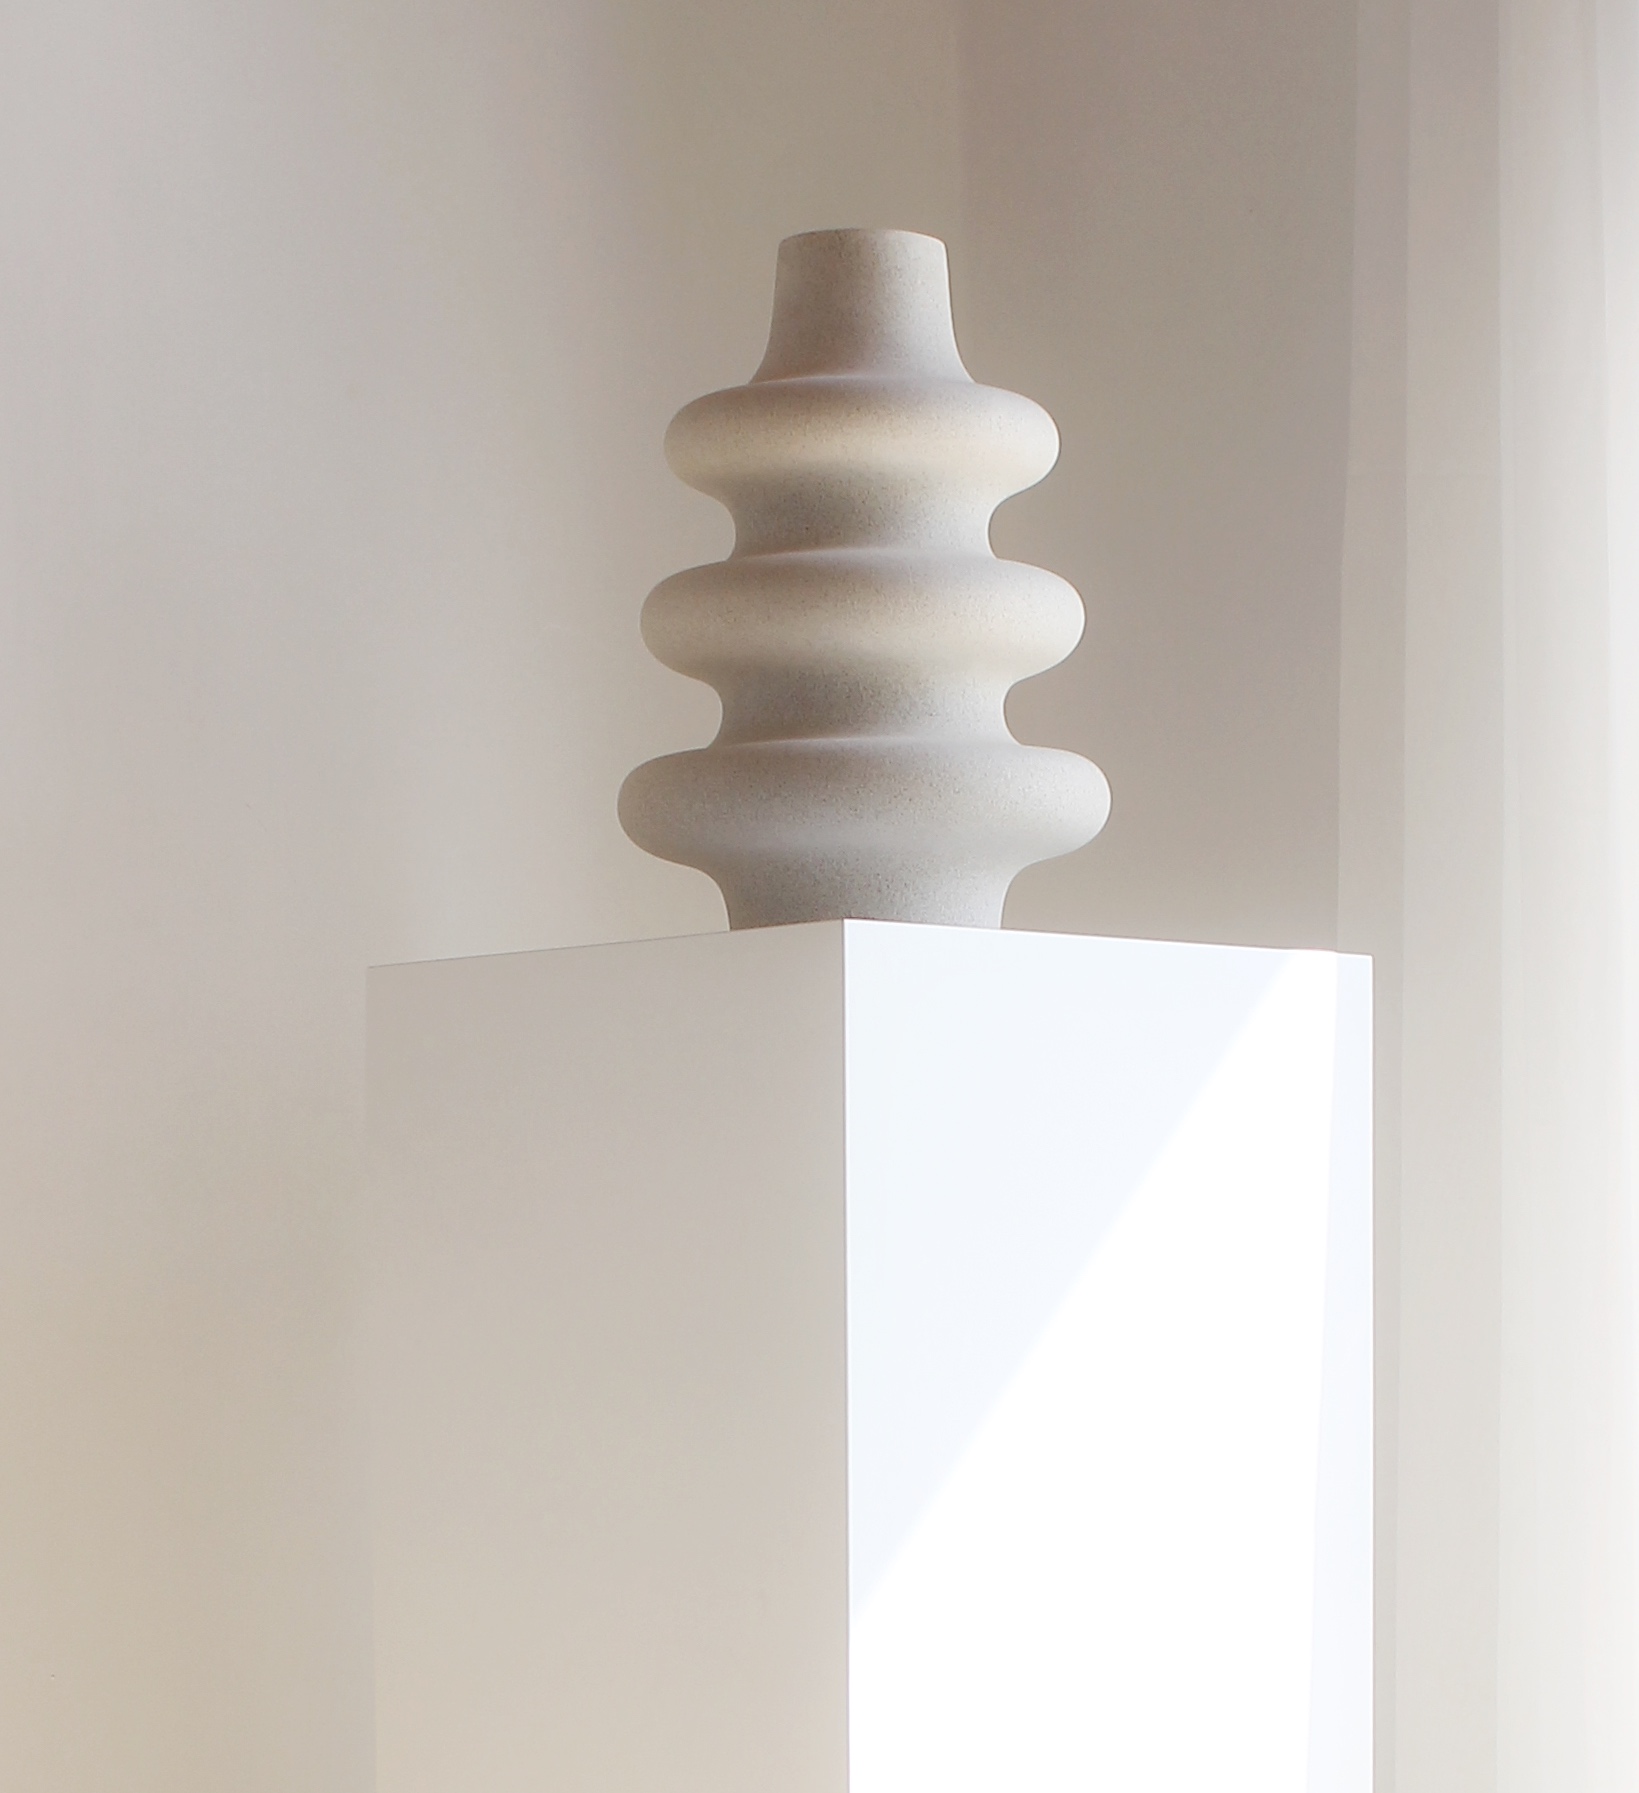 Pedestal para escultura Maison / Plinto blanco 3